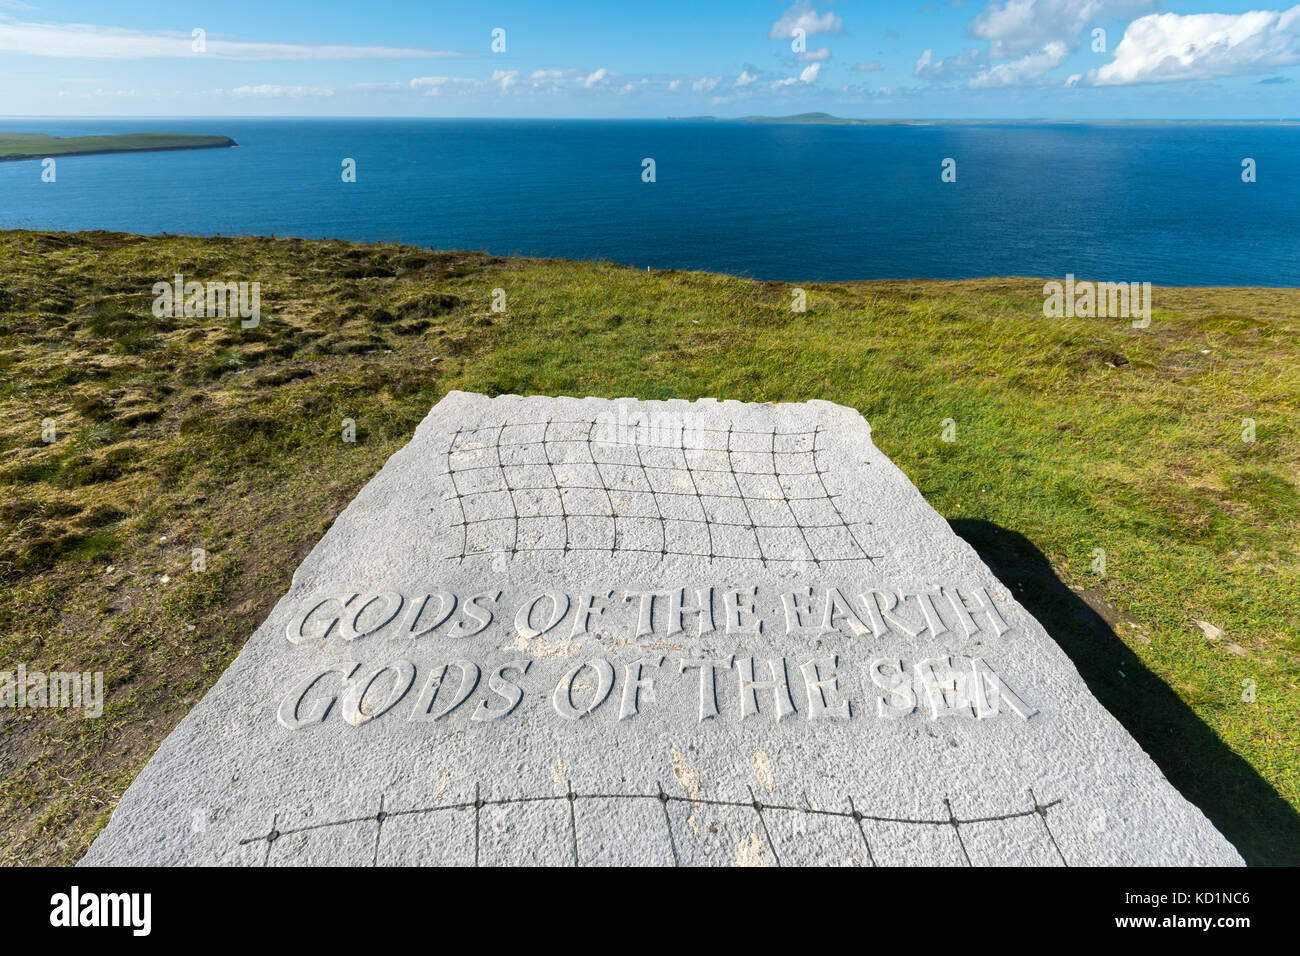 'Gods of the Earth, Gods of the Sea', a sculpture by Ian Hamilton Finlay. Saviskaill Bay, near Faraclett Head, Rousay, Orkney Islands, Scotland, UK. Stock Photo